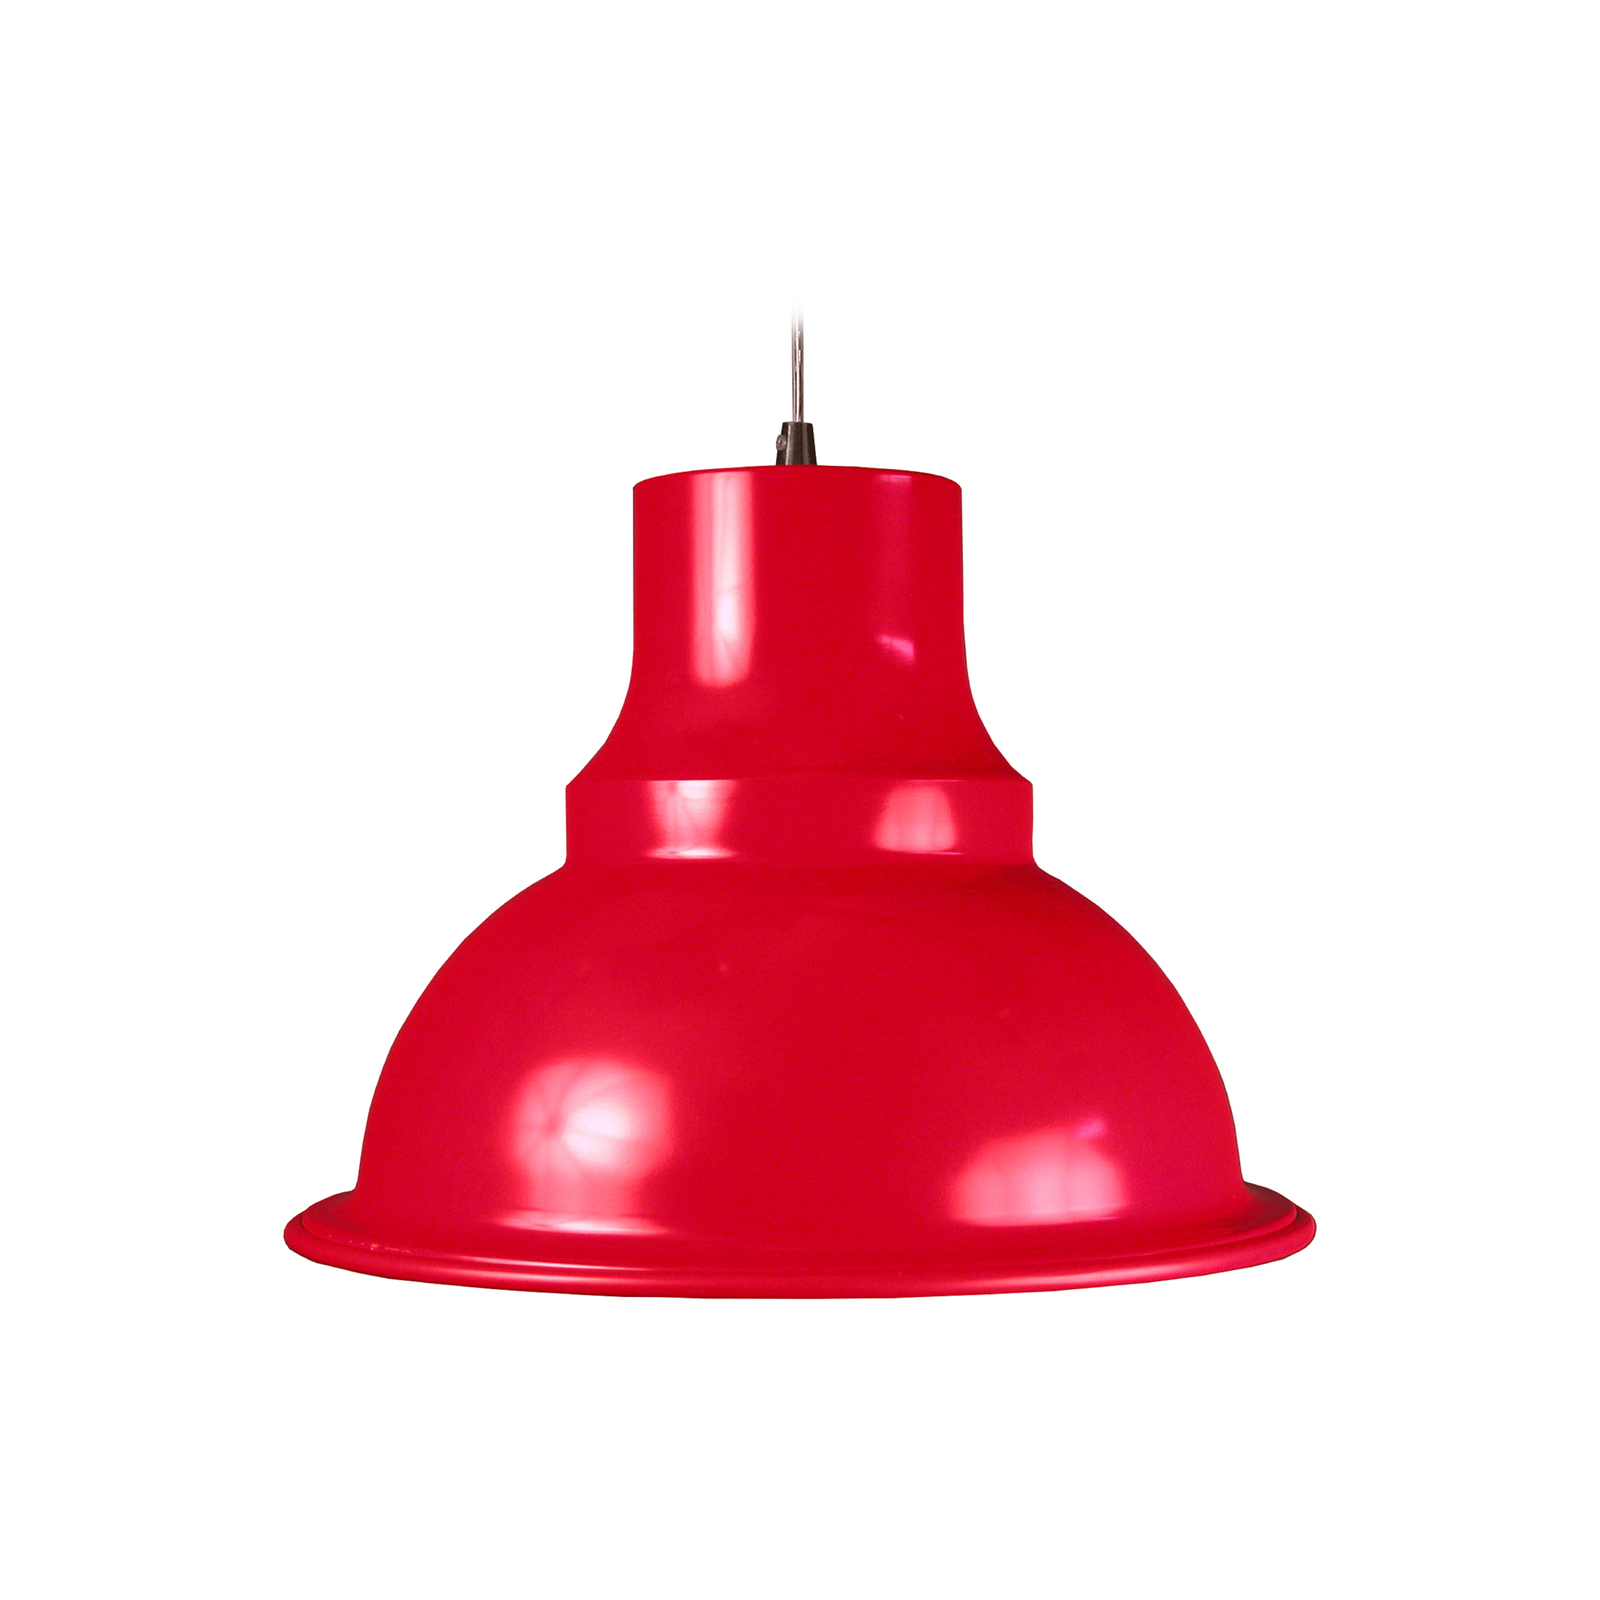 Aluminor Loft hanglamp, Ø 39 cm, rood